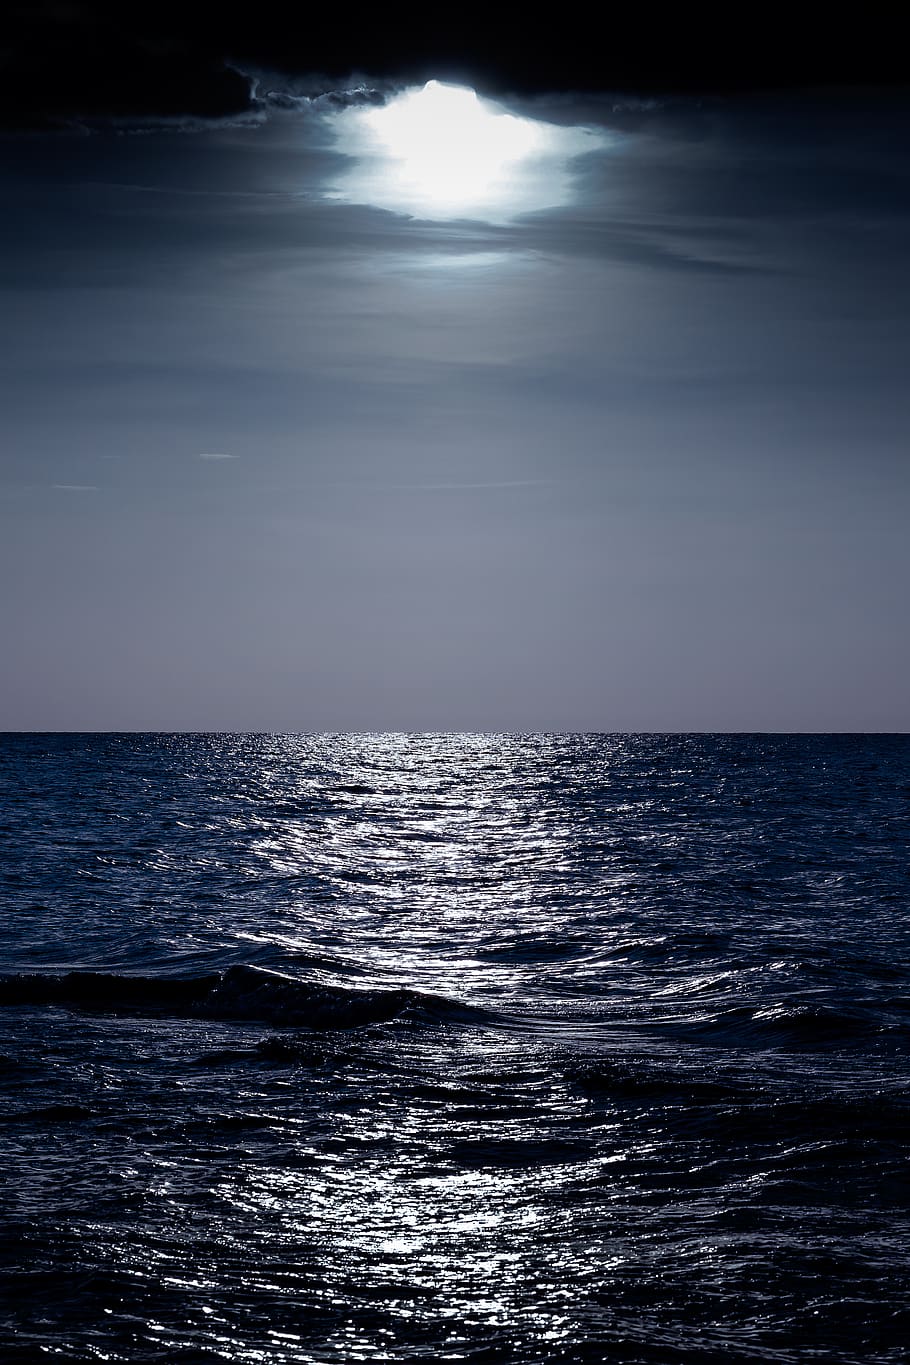 night sea, moon, sea, ocean, vertical, cool, dark, blue, navy blue, the waves